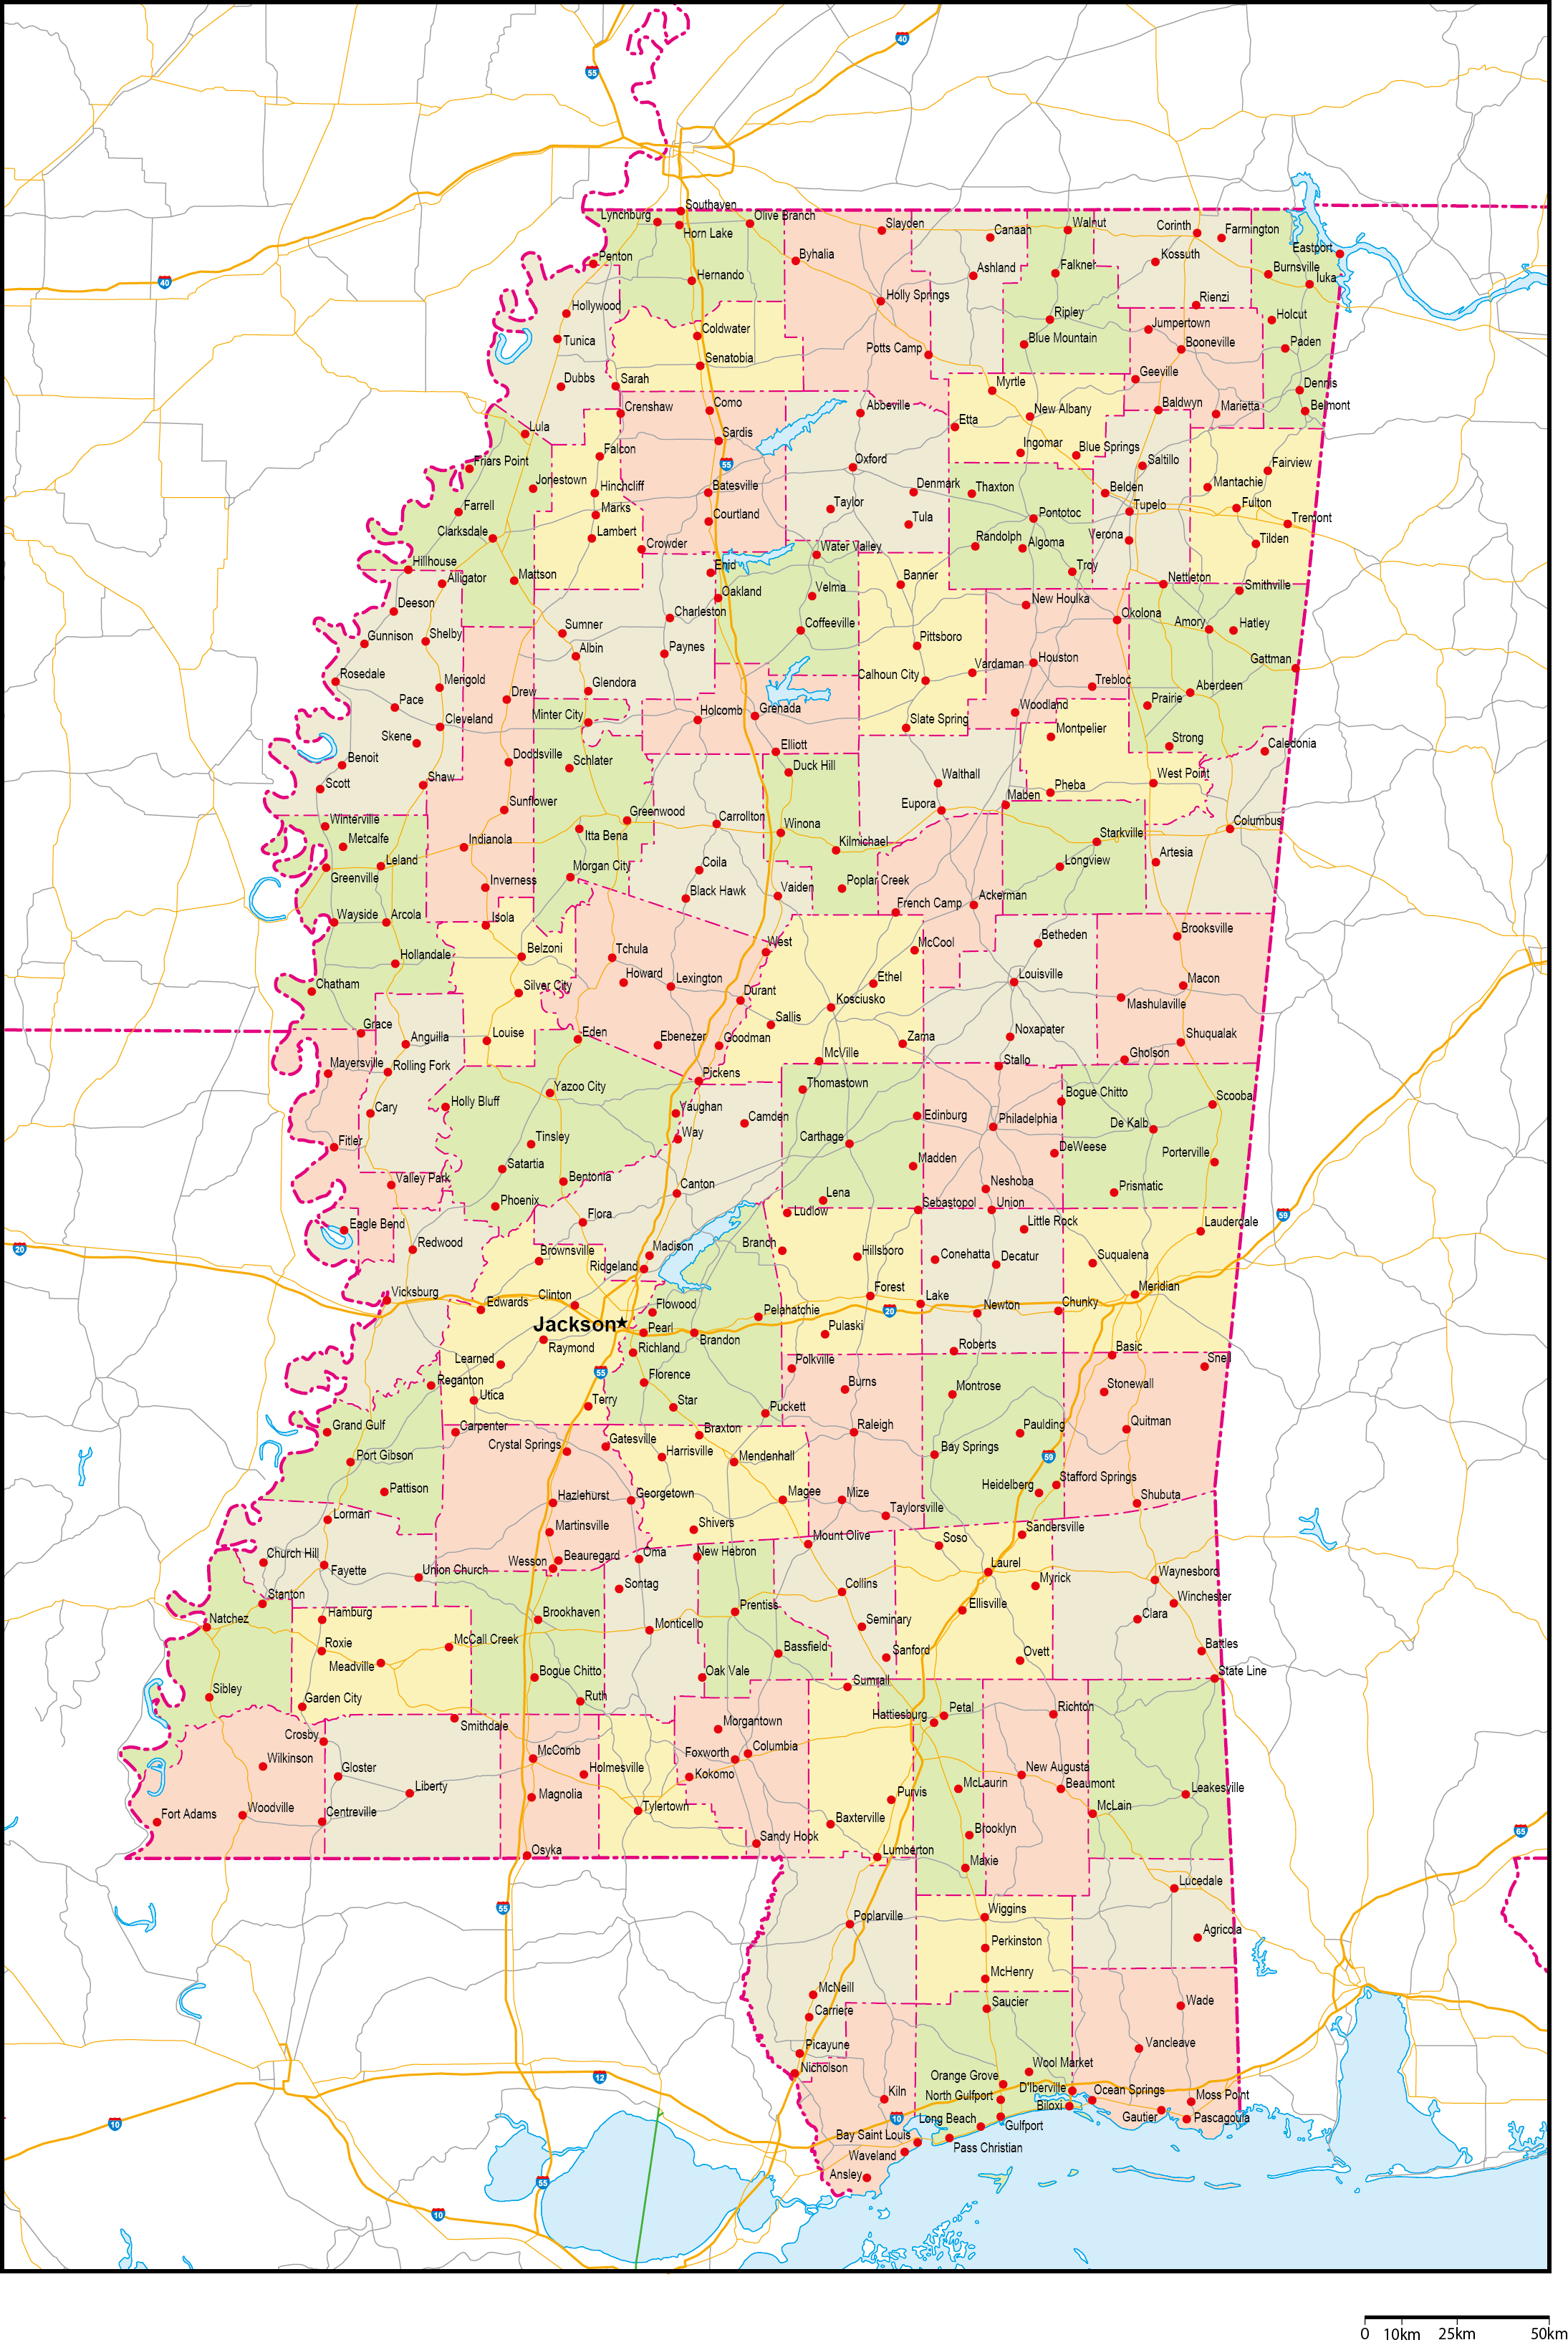 ミシシッピ州郡色分け地図州都・主な都市・道路あり(英語)フリーデータの画像